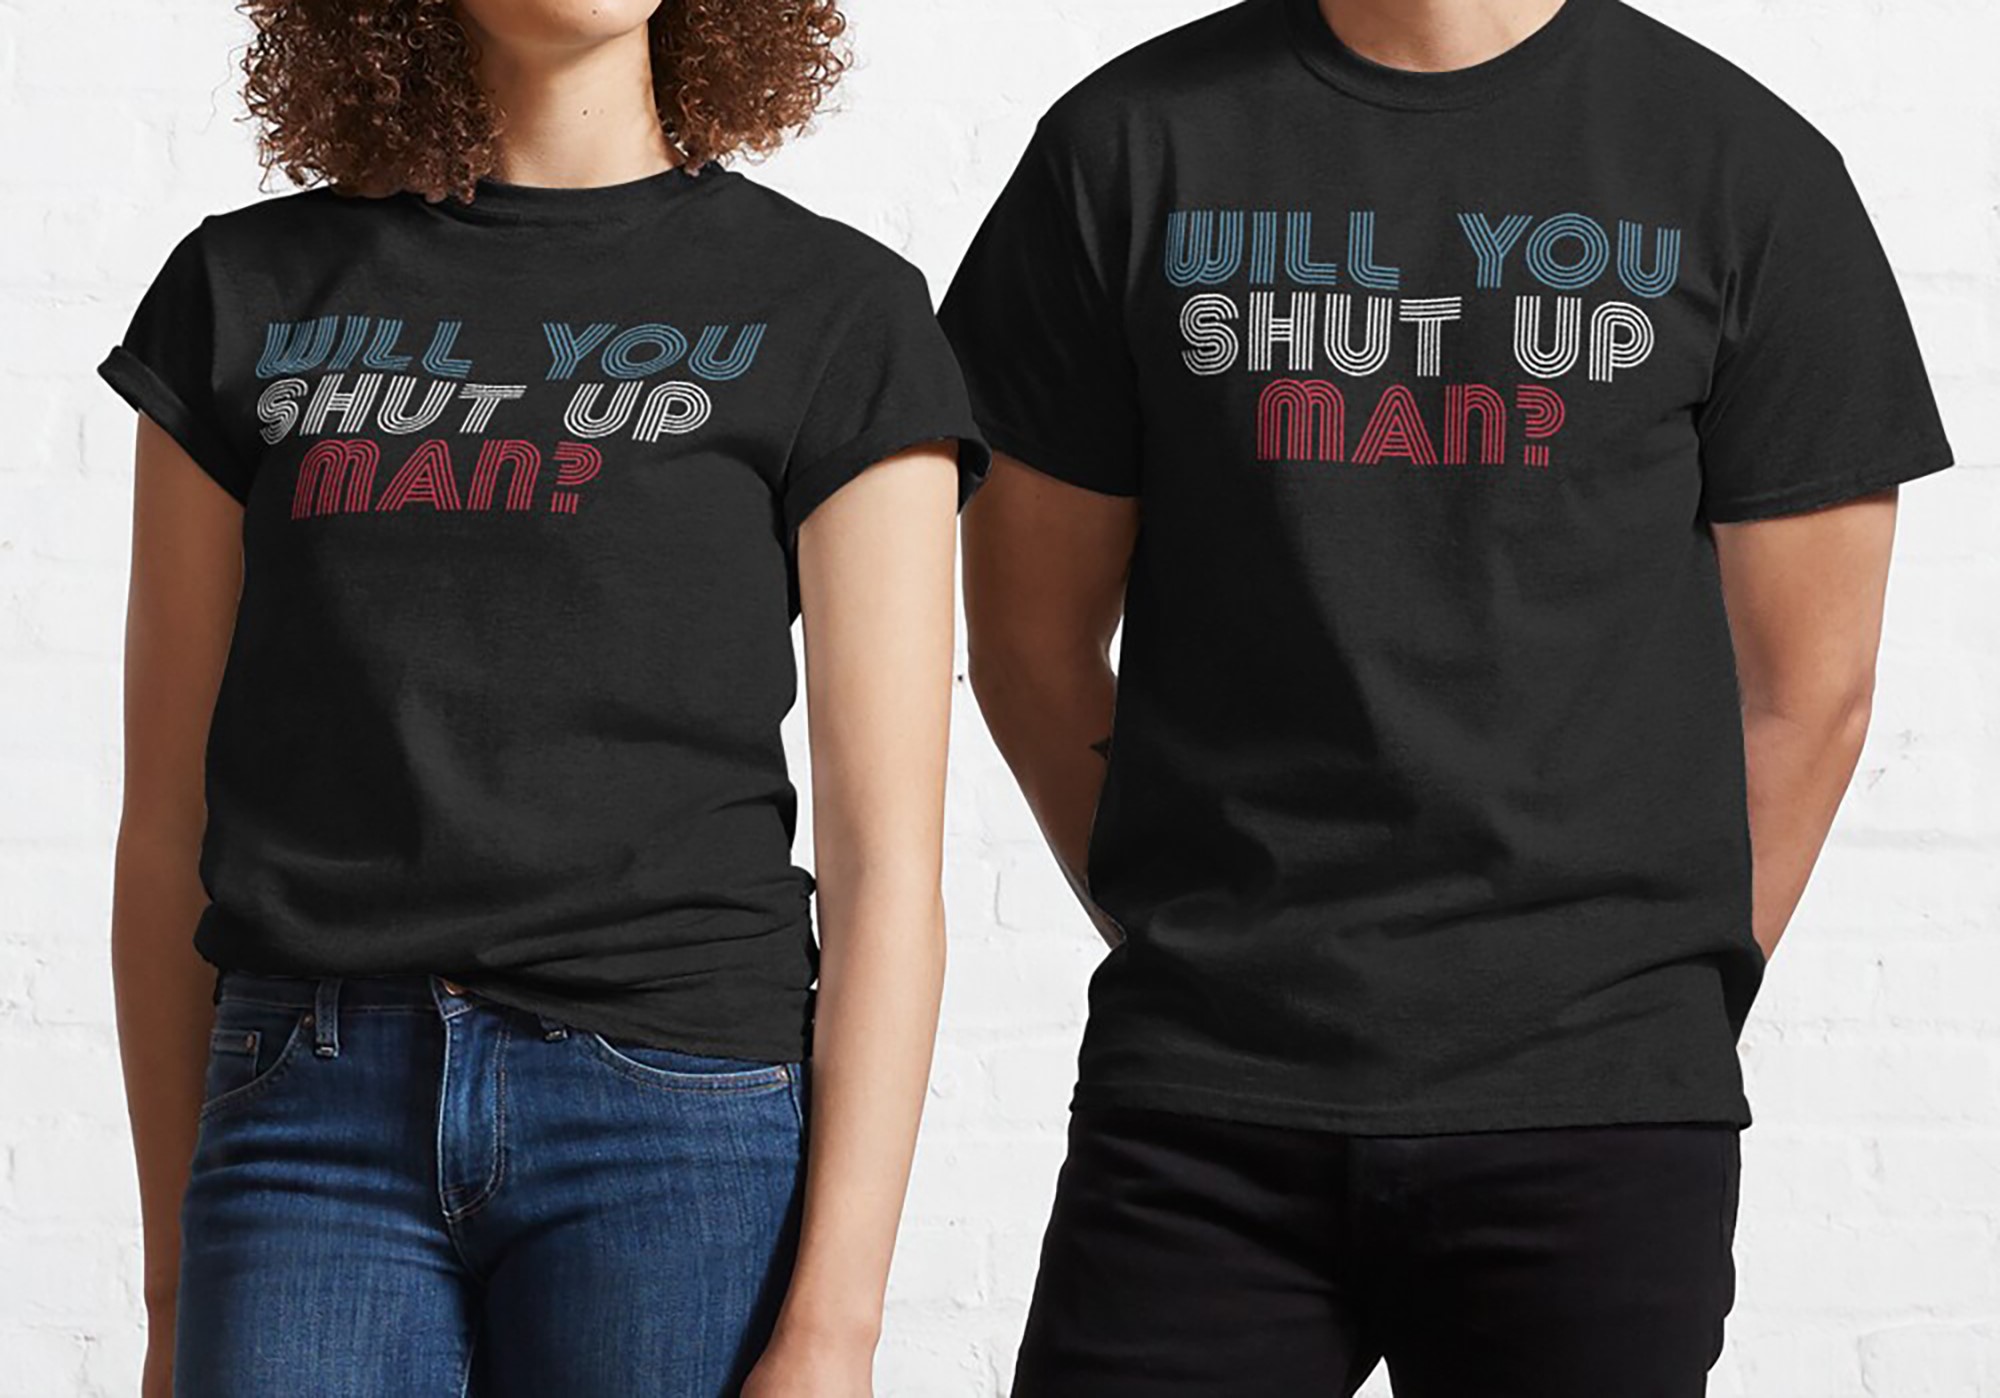 Will You Shut Up Man Biden Debate Quote Classic T-shirt